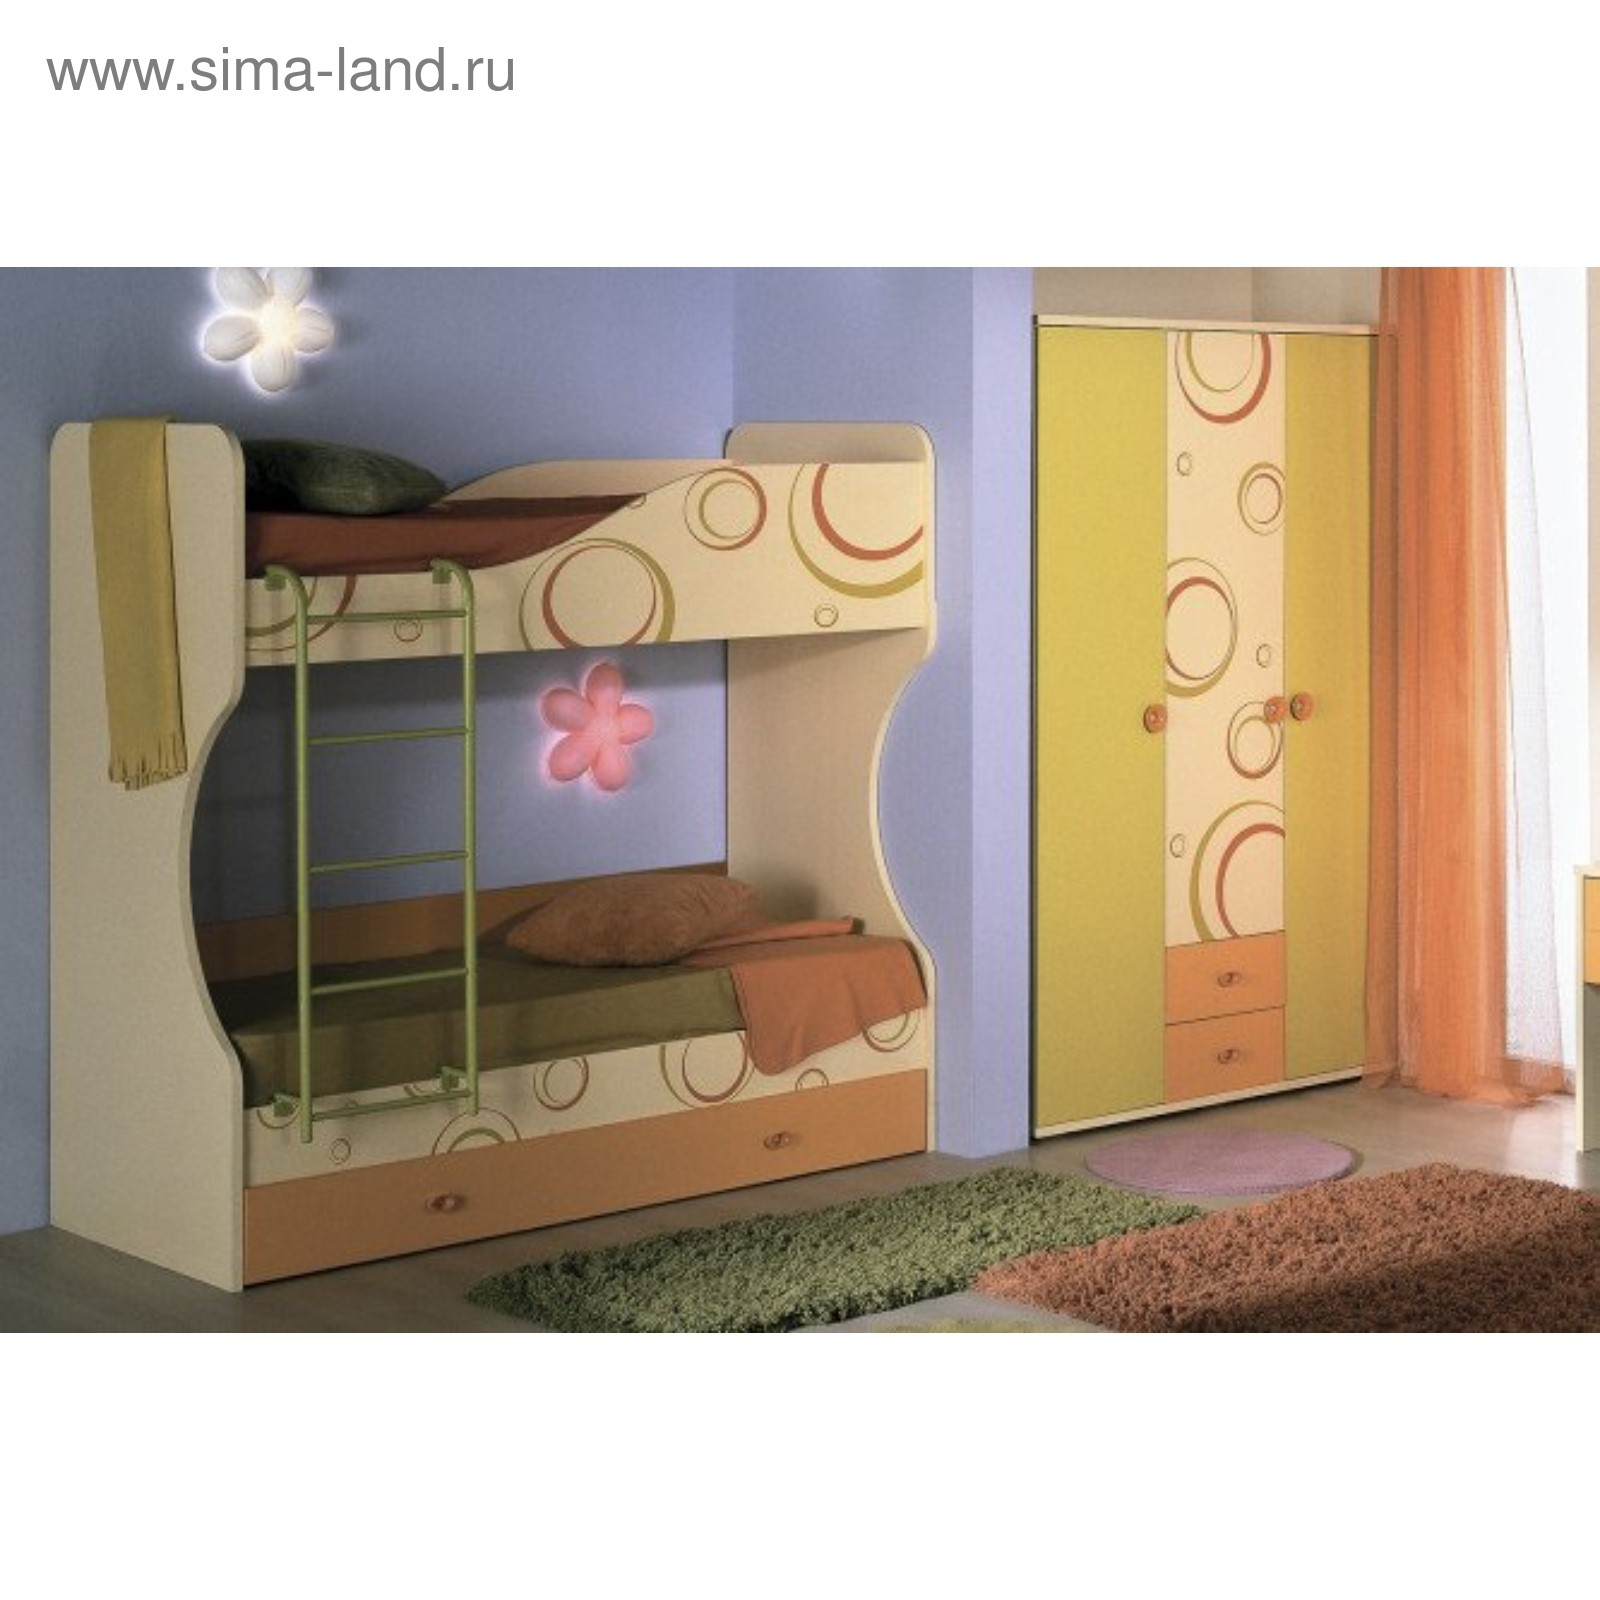 Мебель Фруттис детская кровать двухъярусная